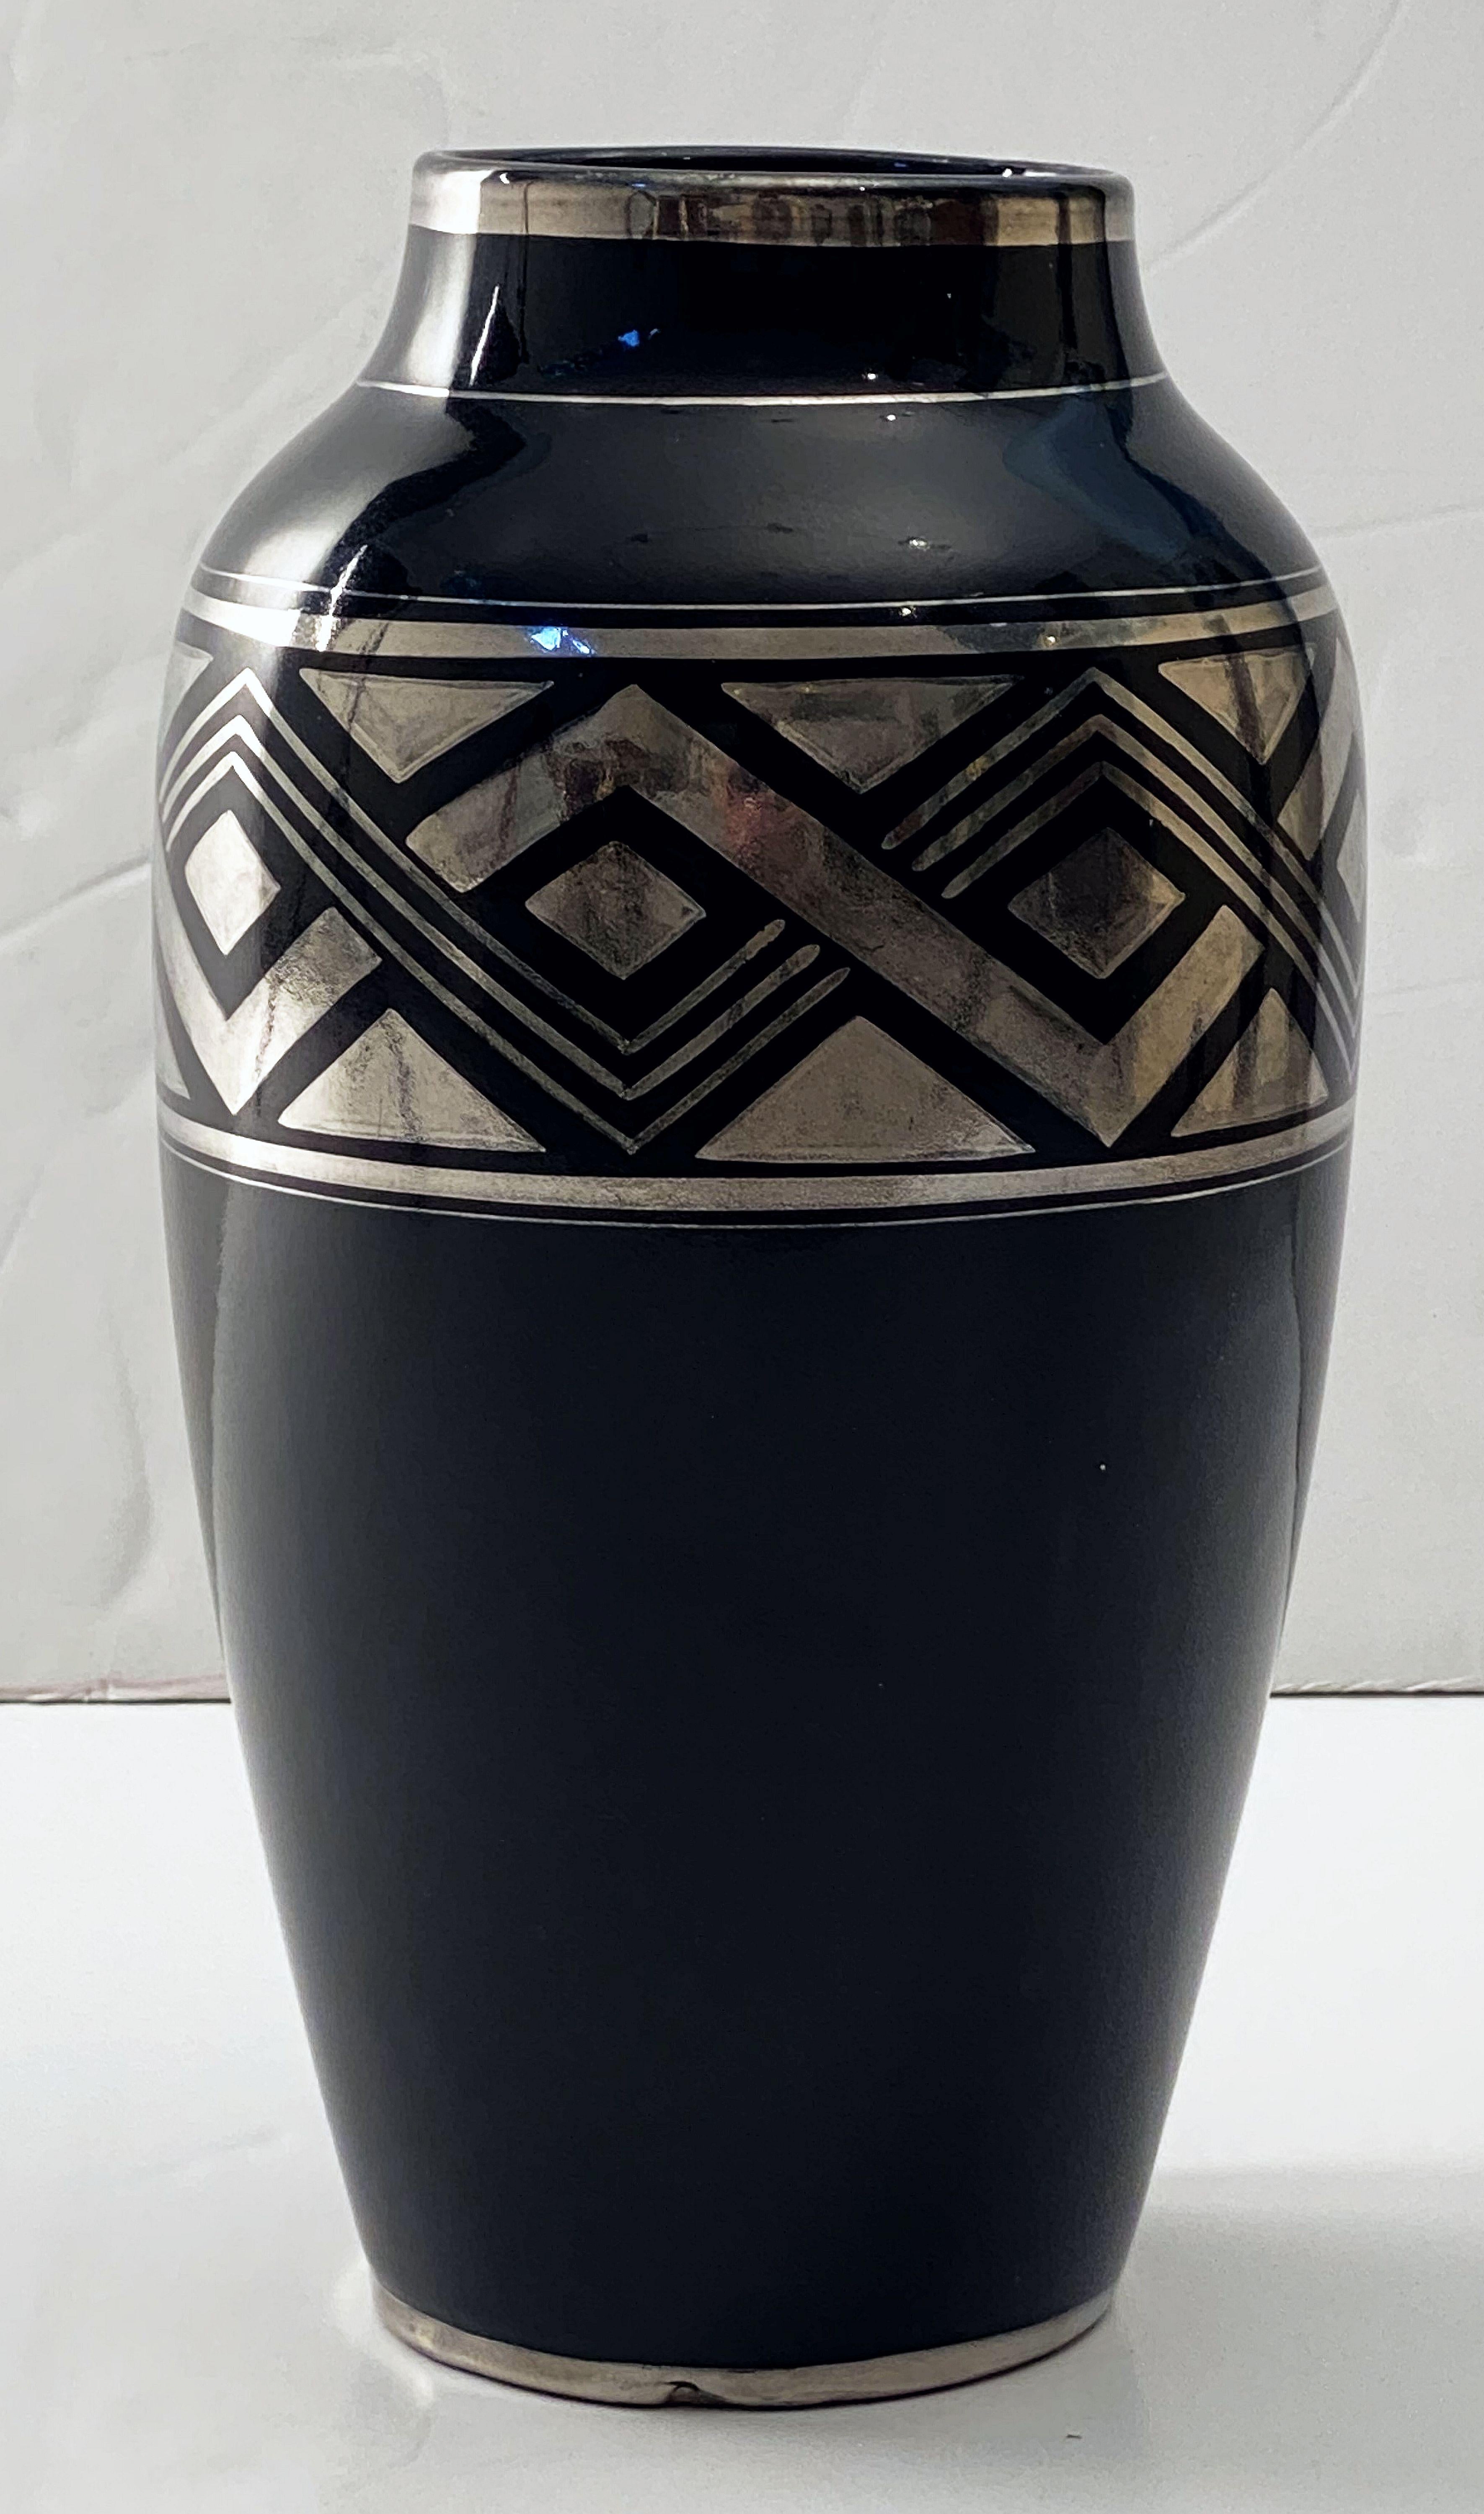 Eine schöne schwarze Vase im französischen Art Déco-Stil mit einem auffälligen geometrischen Muster in Silber um den Umfang herum. Sie stammt von den berühmten Designerinnen Odette Berlot und Yvonne Mussier, kurz ODYV, die in der Zeit des Art Déco